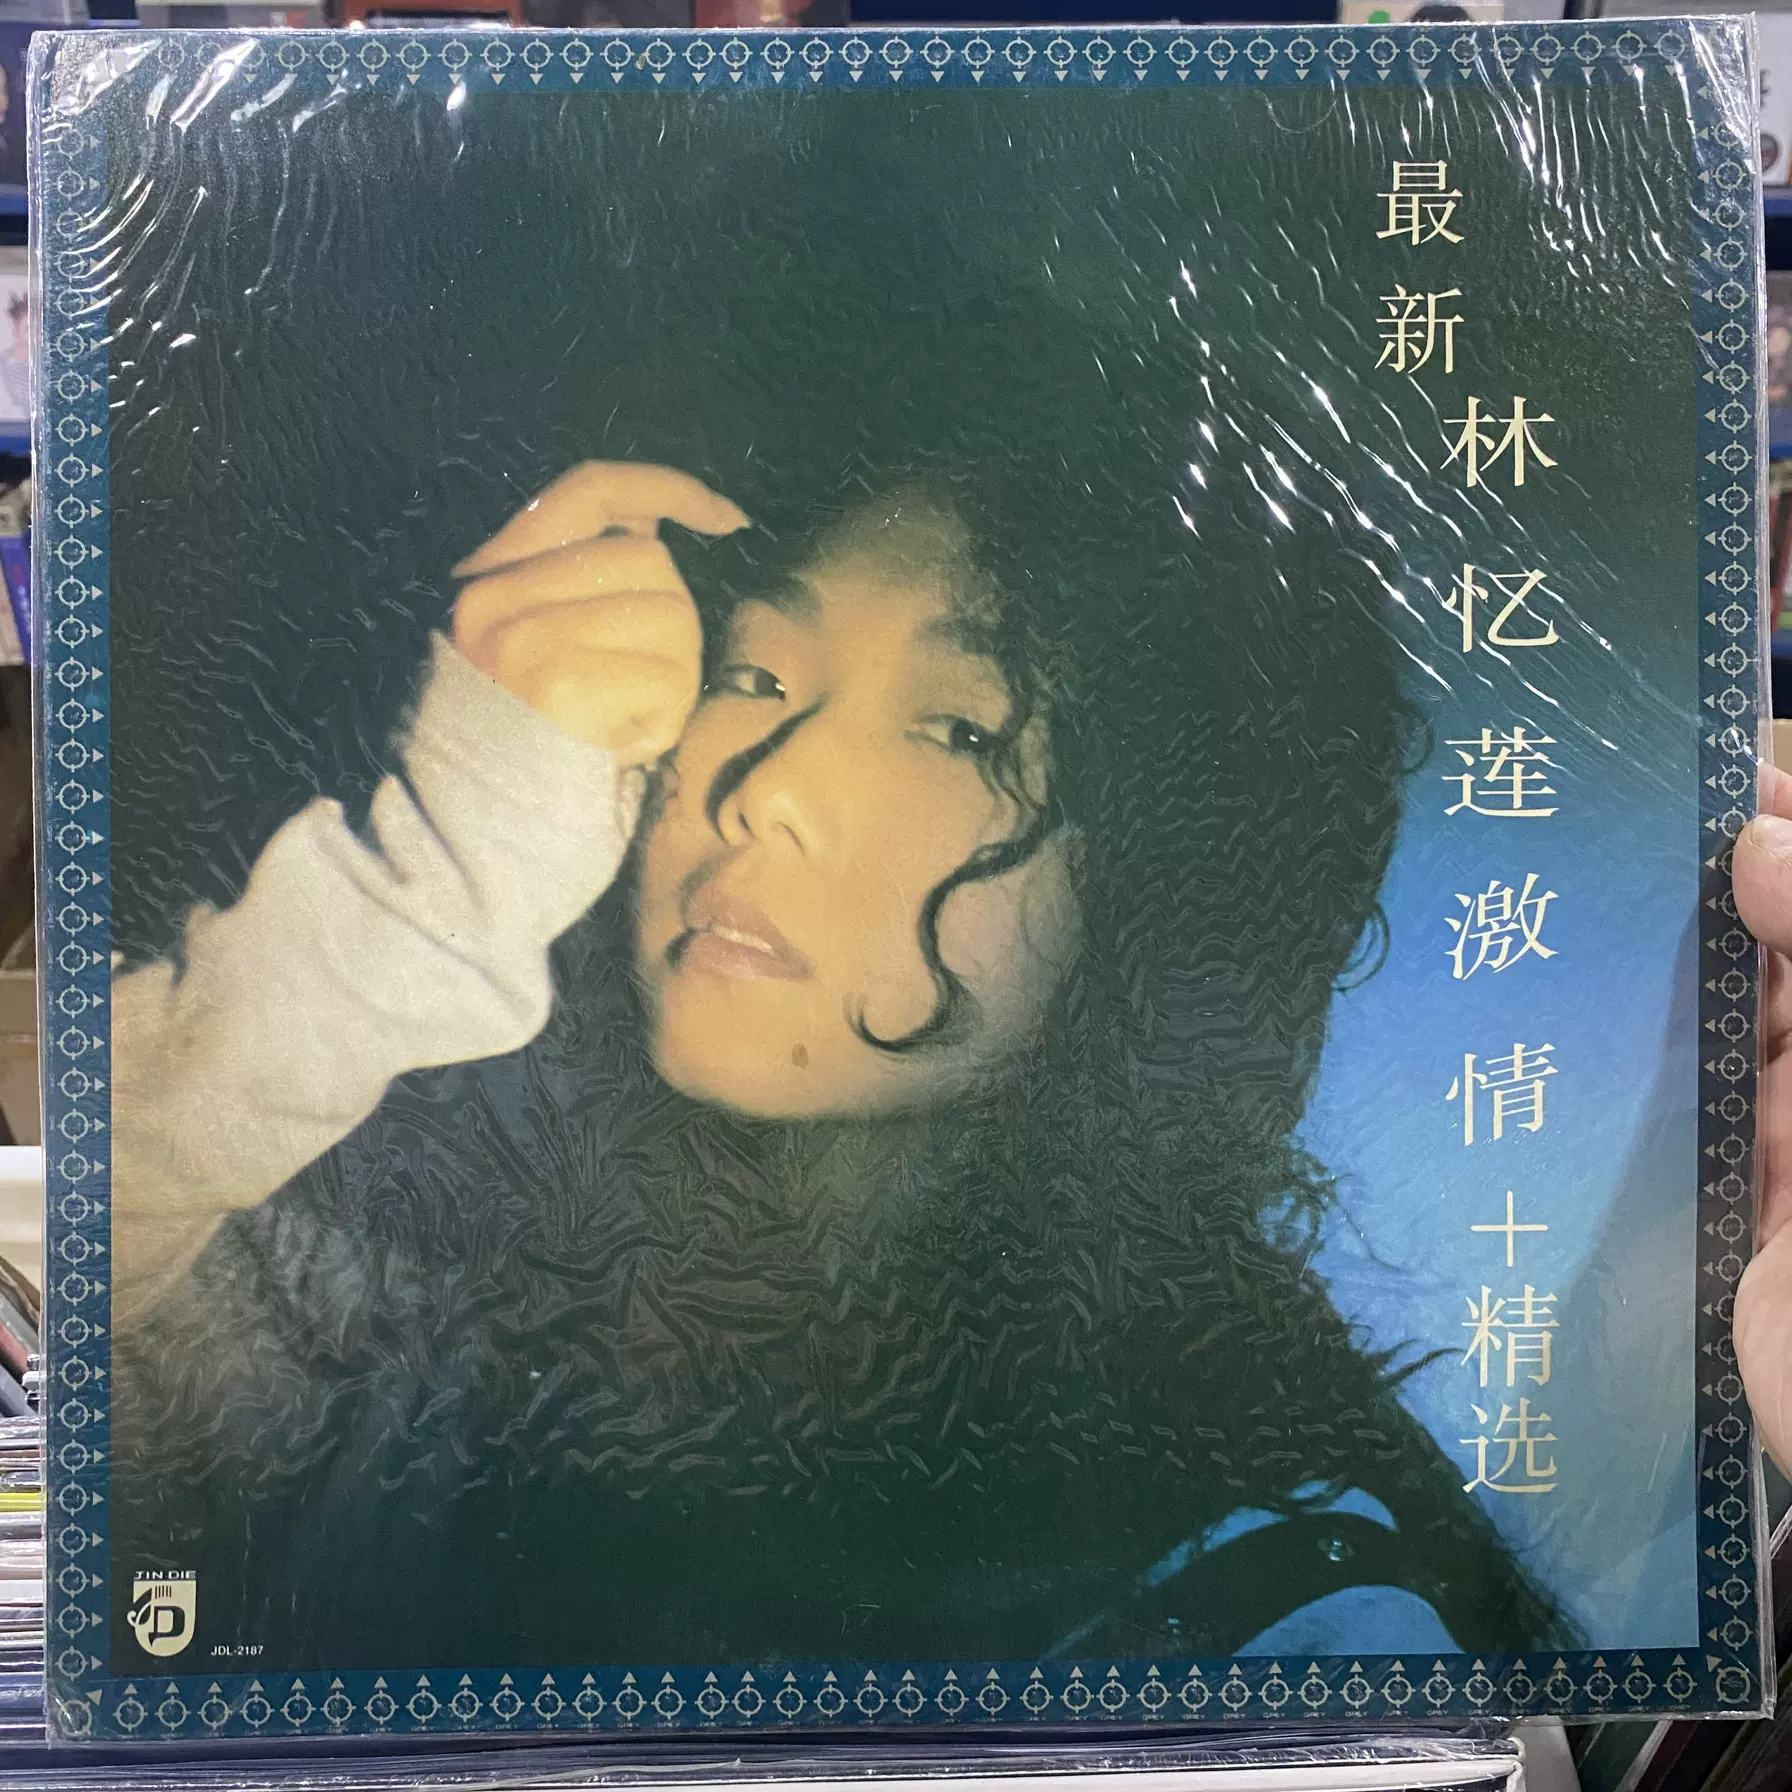 现货具岛直子URBAN BLUES Presents BEST OF NAOKO GUSHIMA黑胶LP-Taobao